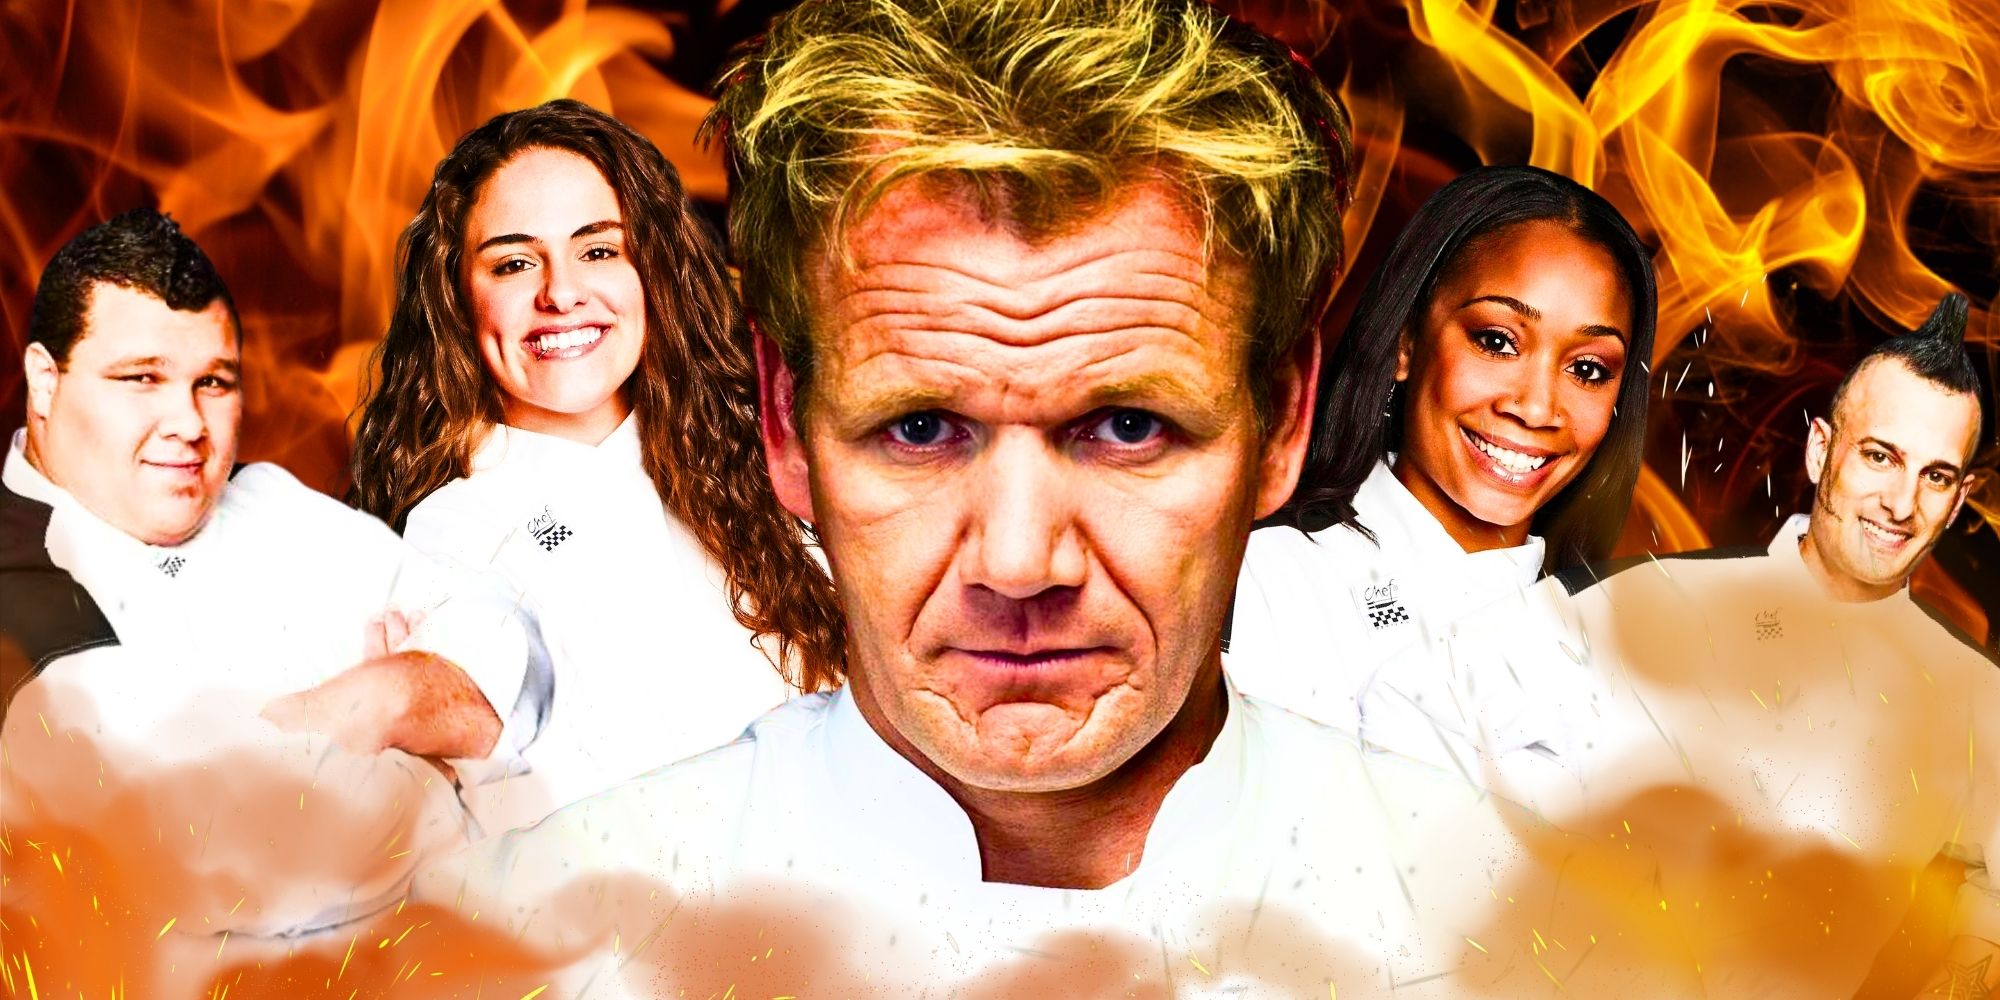 Hell's Kitchen Temporada 11: ¿Qué pasó con los competidores después del espectáculo?